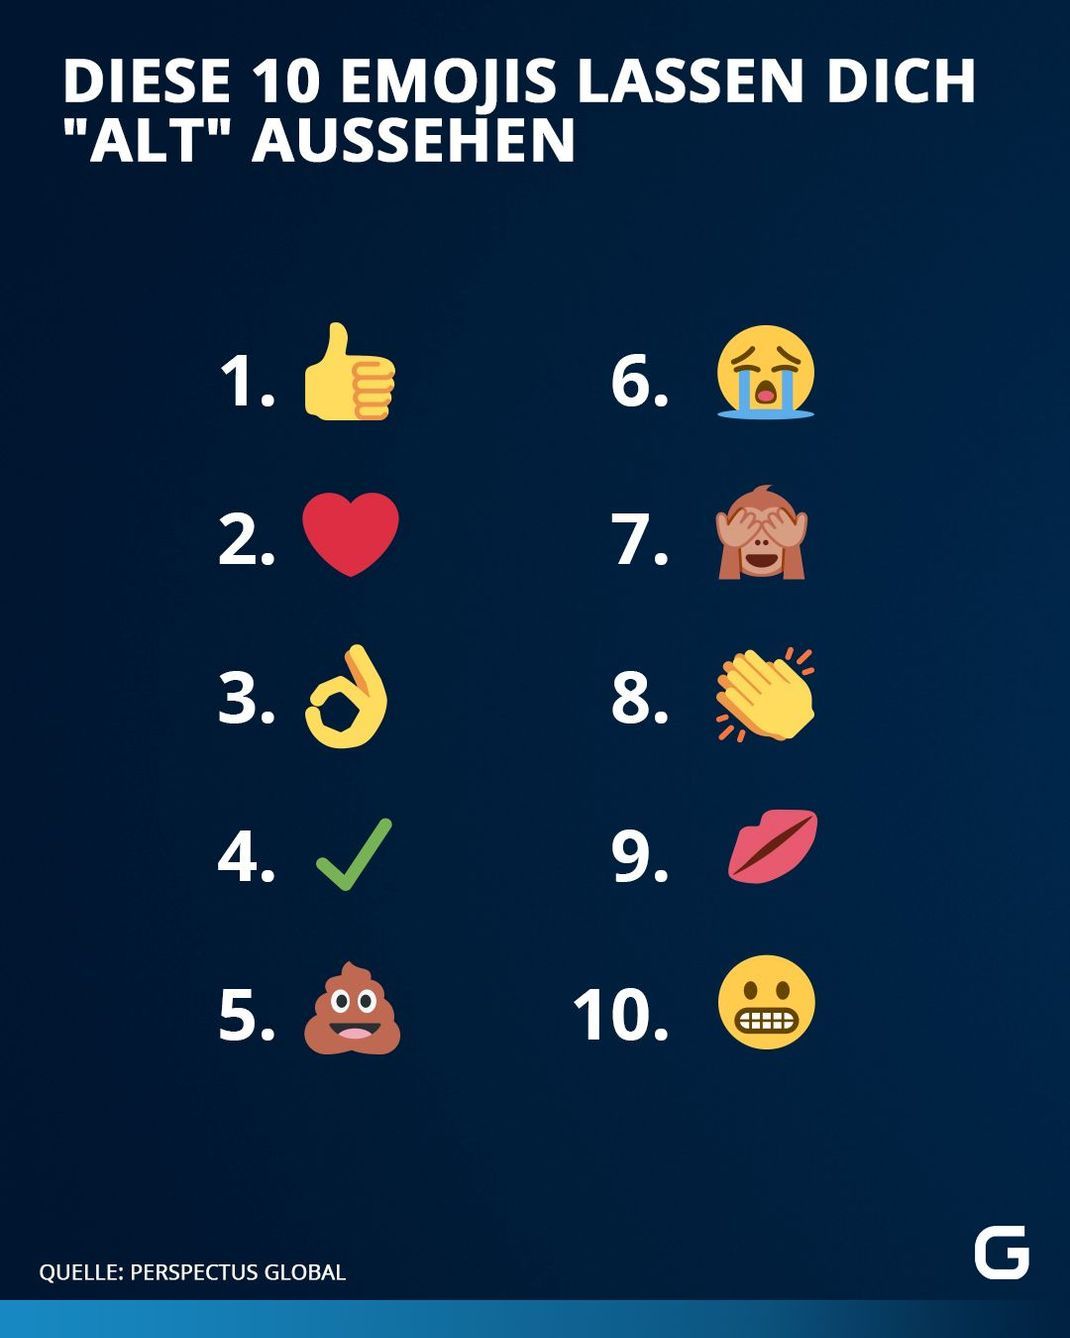 Eine Studie von Perspectus Global zeigt, welche Top 10 Emojis uns "alt" aussehen lassen. Dafür wurden 2.000 16- bis 29-Jährige in der UK befragt.